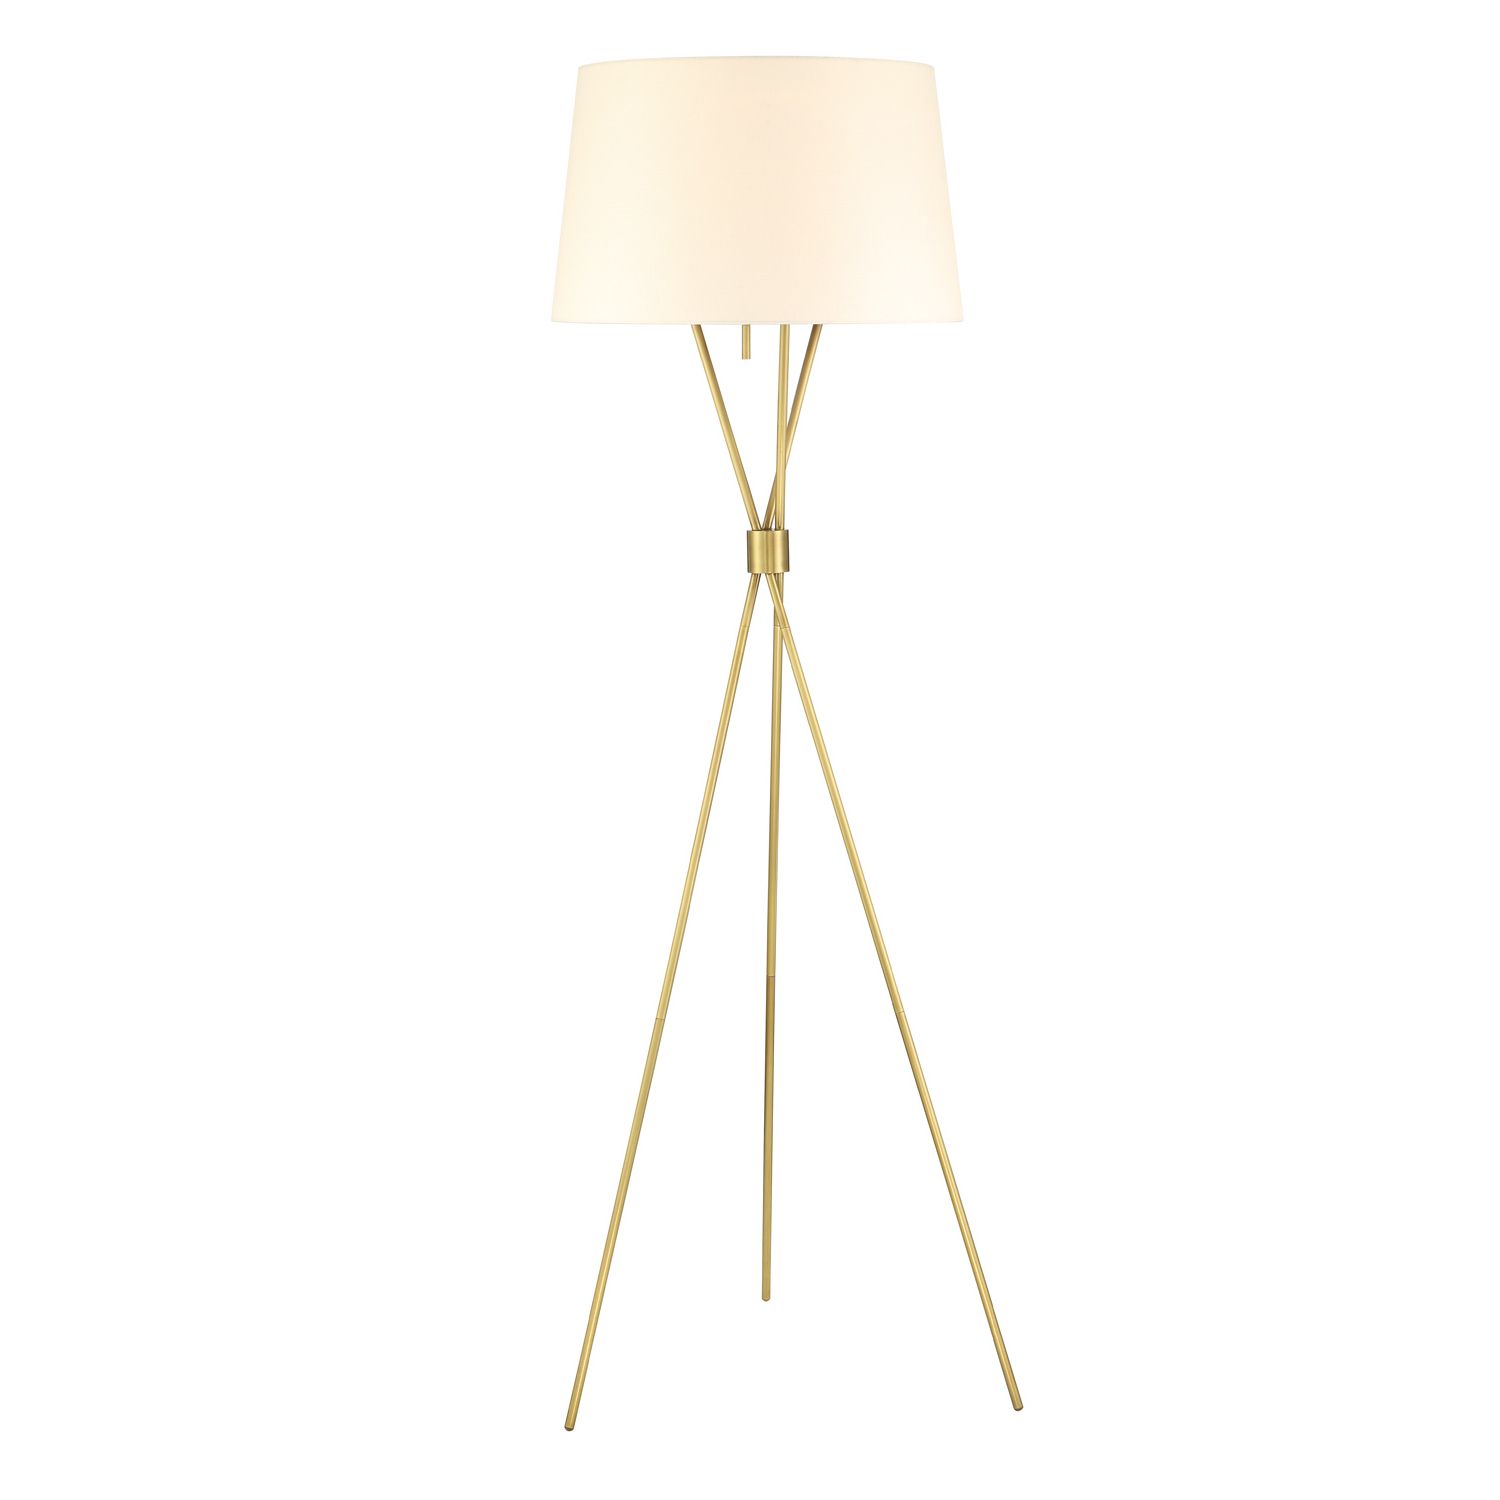 Lights | Lamps | Floor Lamps | Oliver Tripod Floor Lamp, Satin Brass Inside Satin Brass Floor Lamps (View 12 of 20)